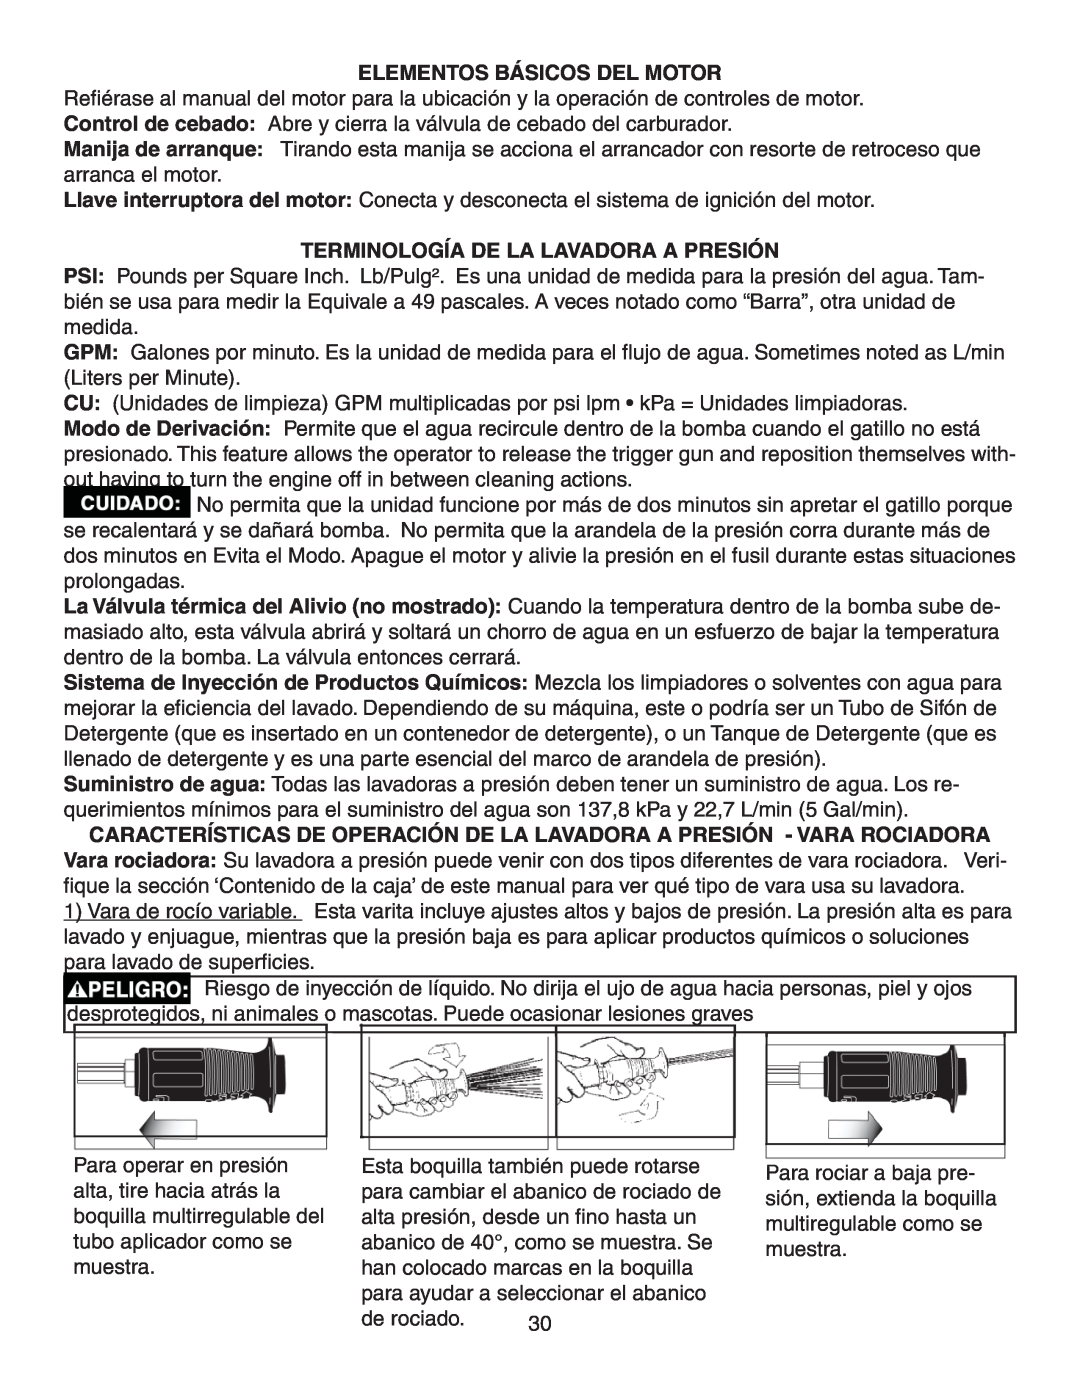 Simpson V3100 warranty Elementos Básicos Del Motor, Terminología De La Lavadora A Presión 